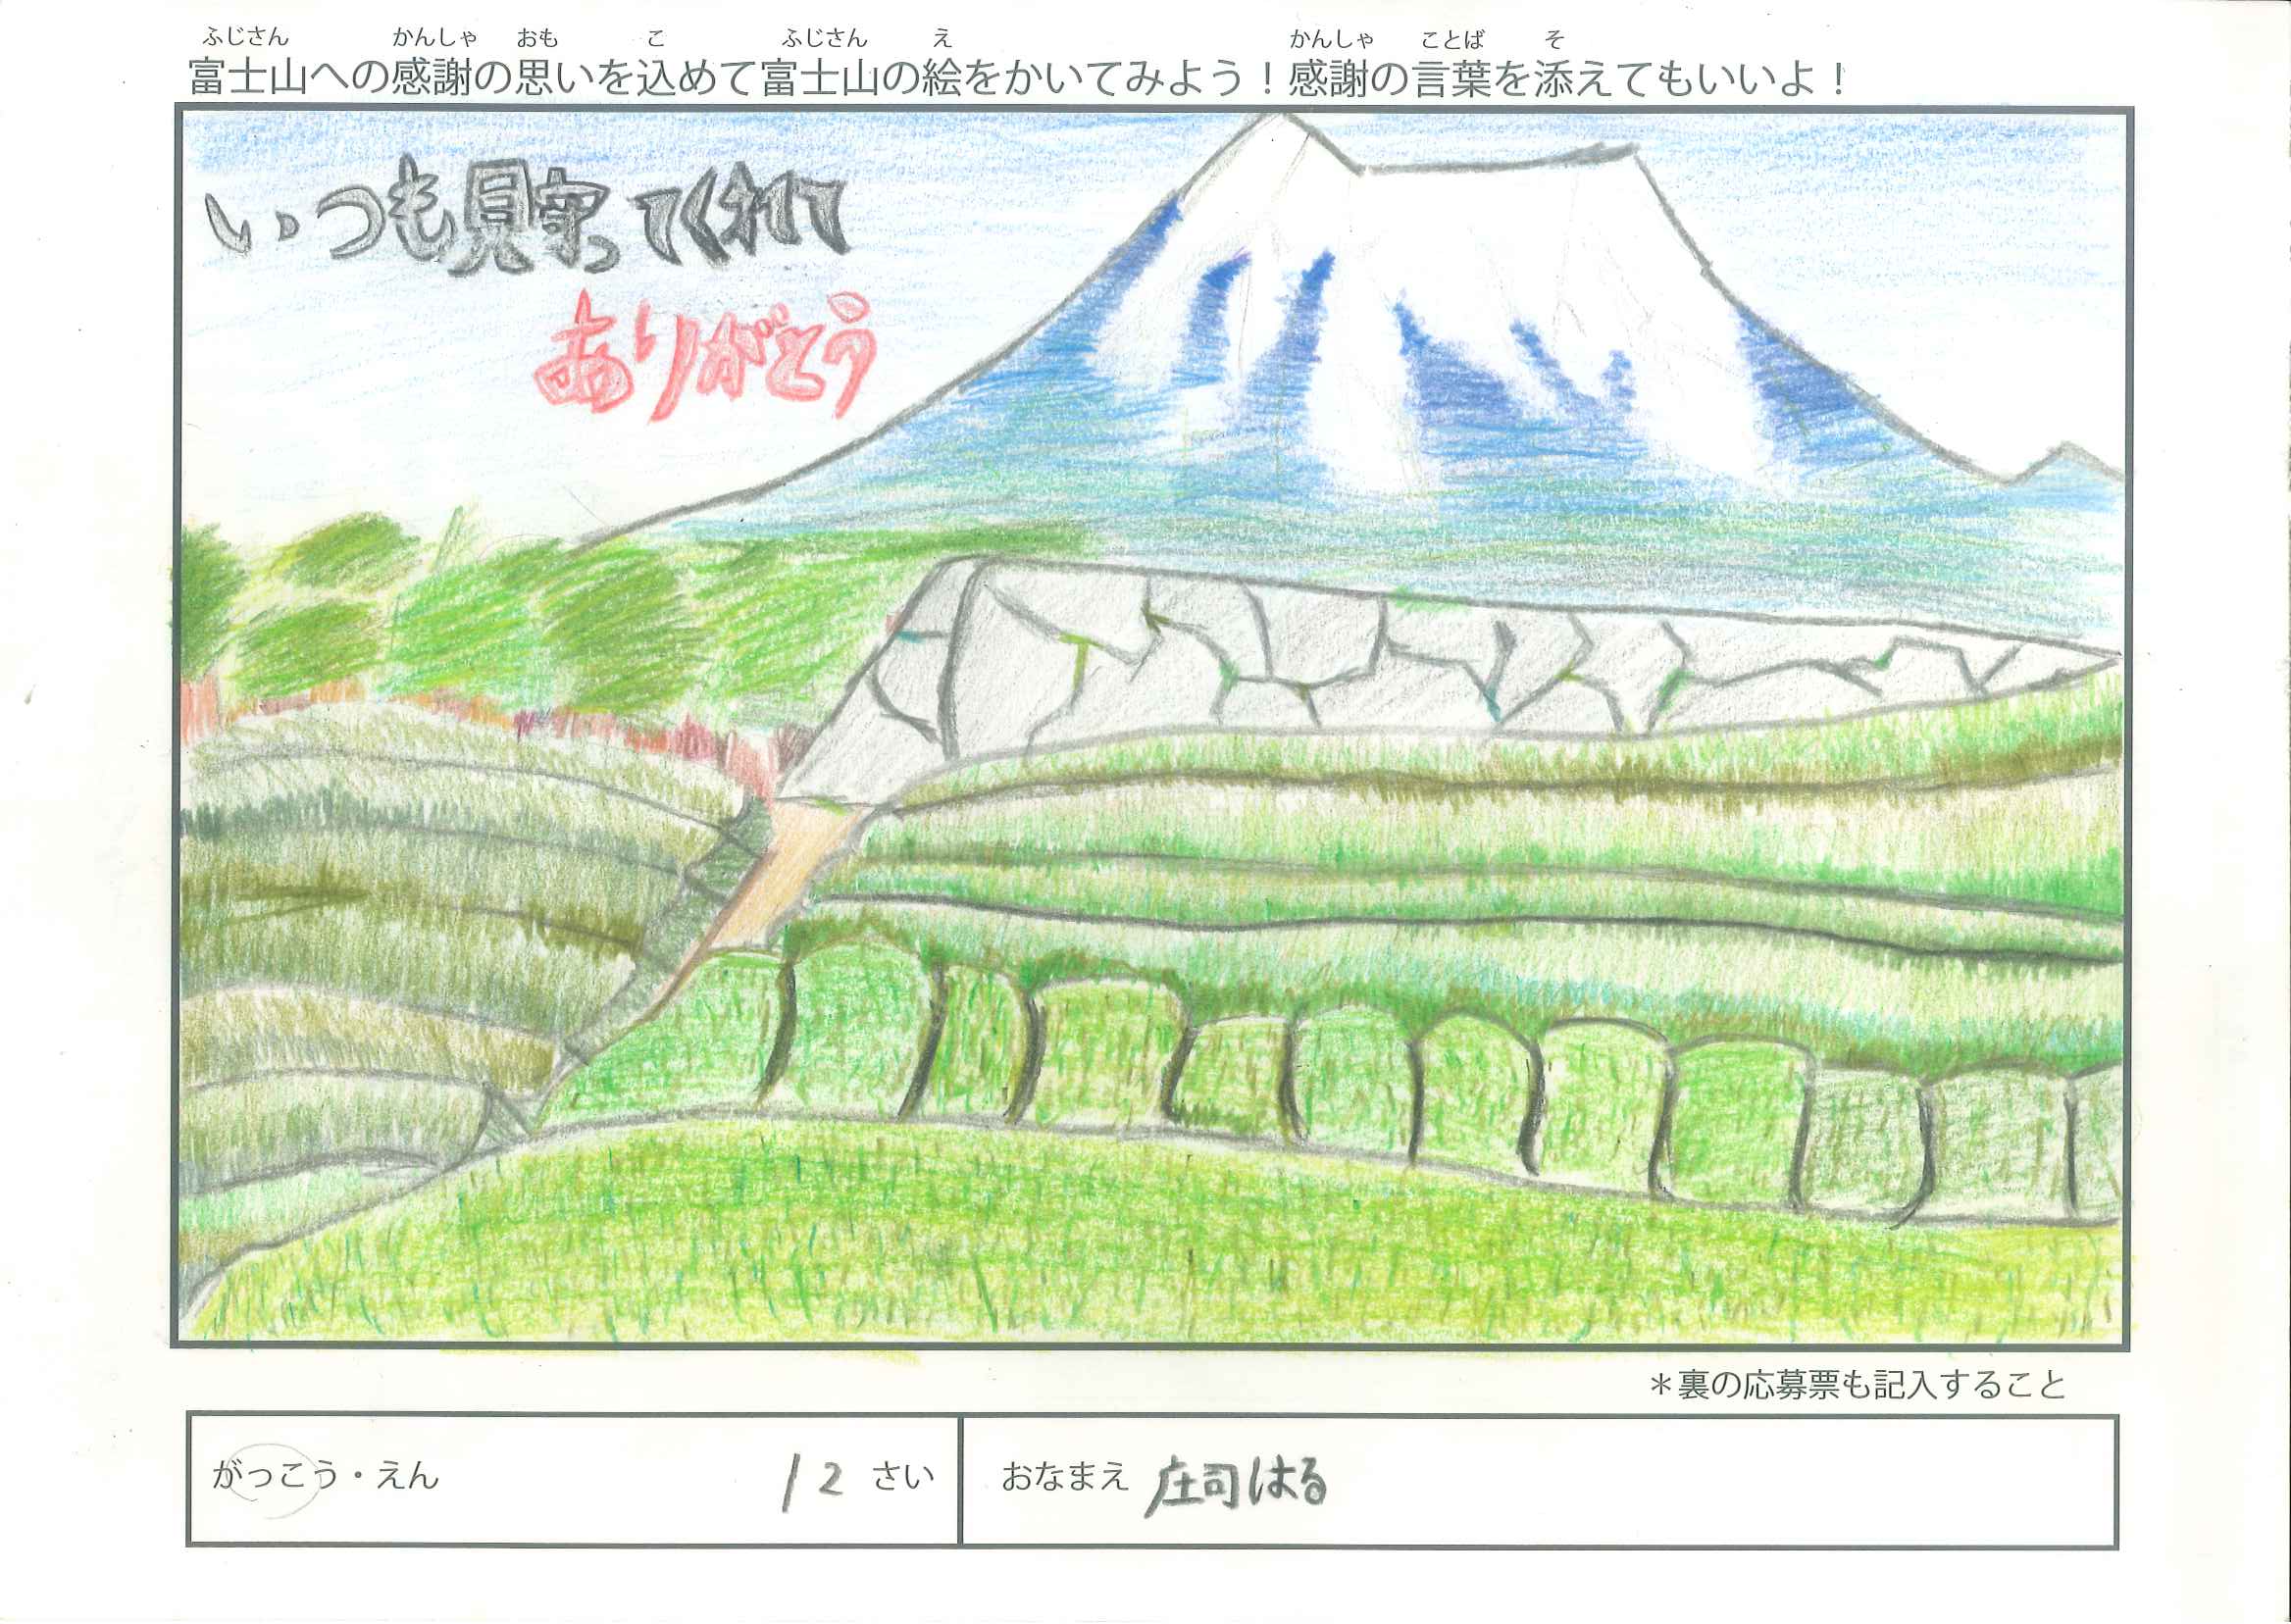 第四回 富士山御蔭祭 富士山の絵画コンクール（小学生の部）